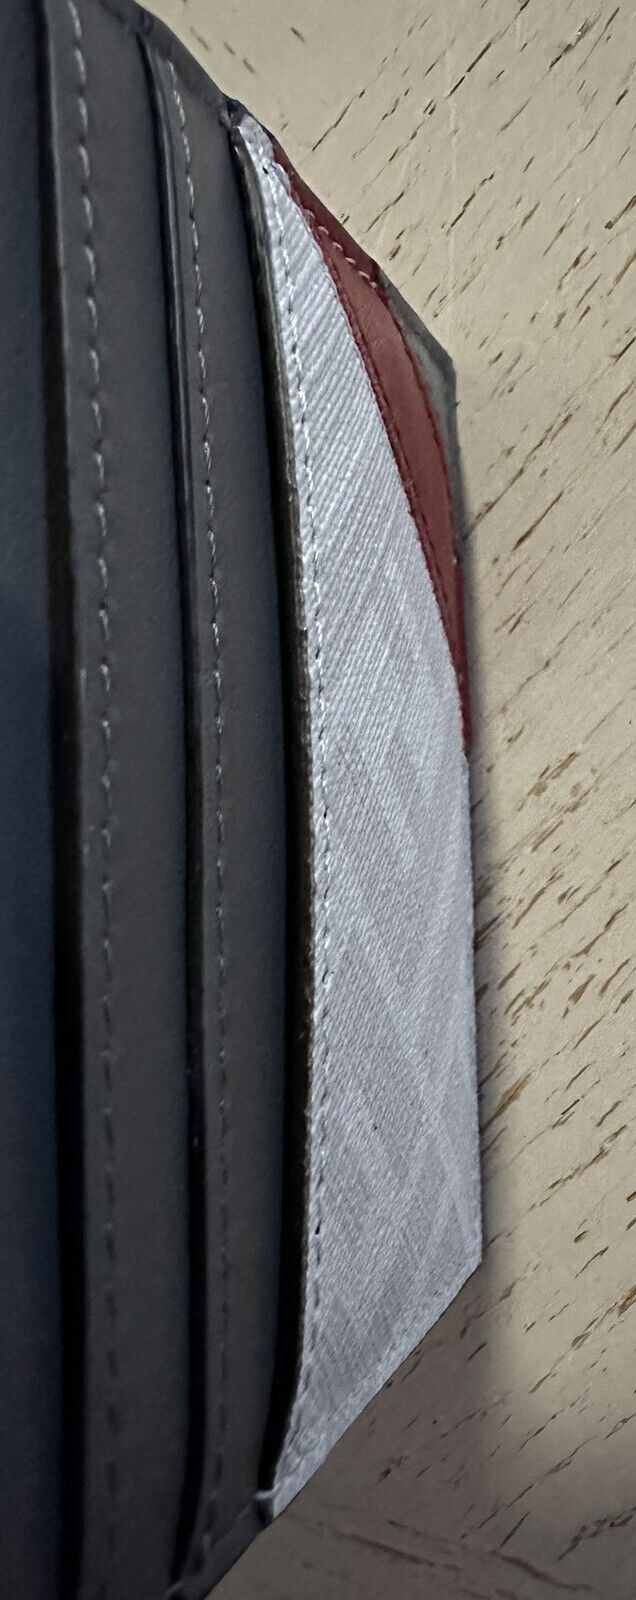 Новый кожаный кошелек с принтом логотипа Fendi, кремовый/красный/серый, Италия